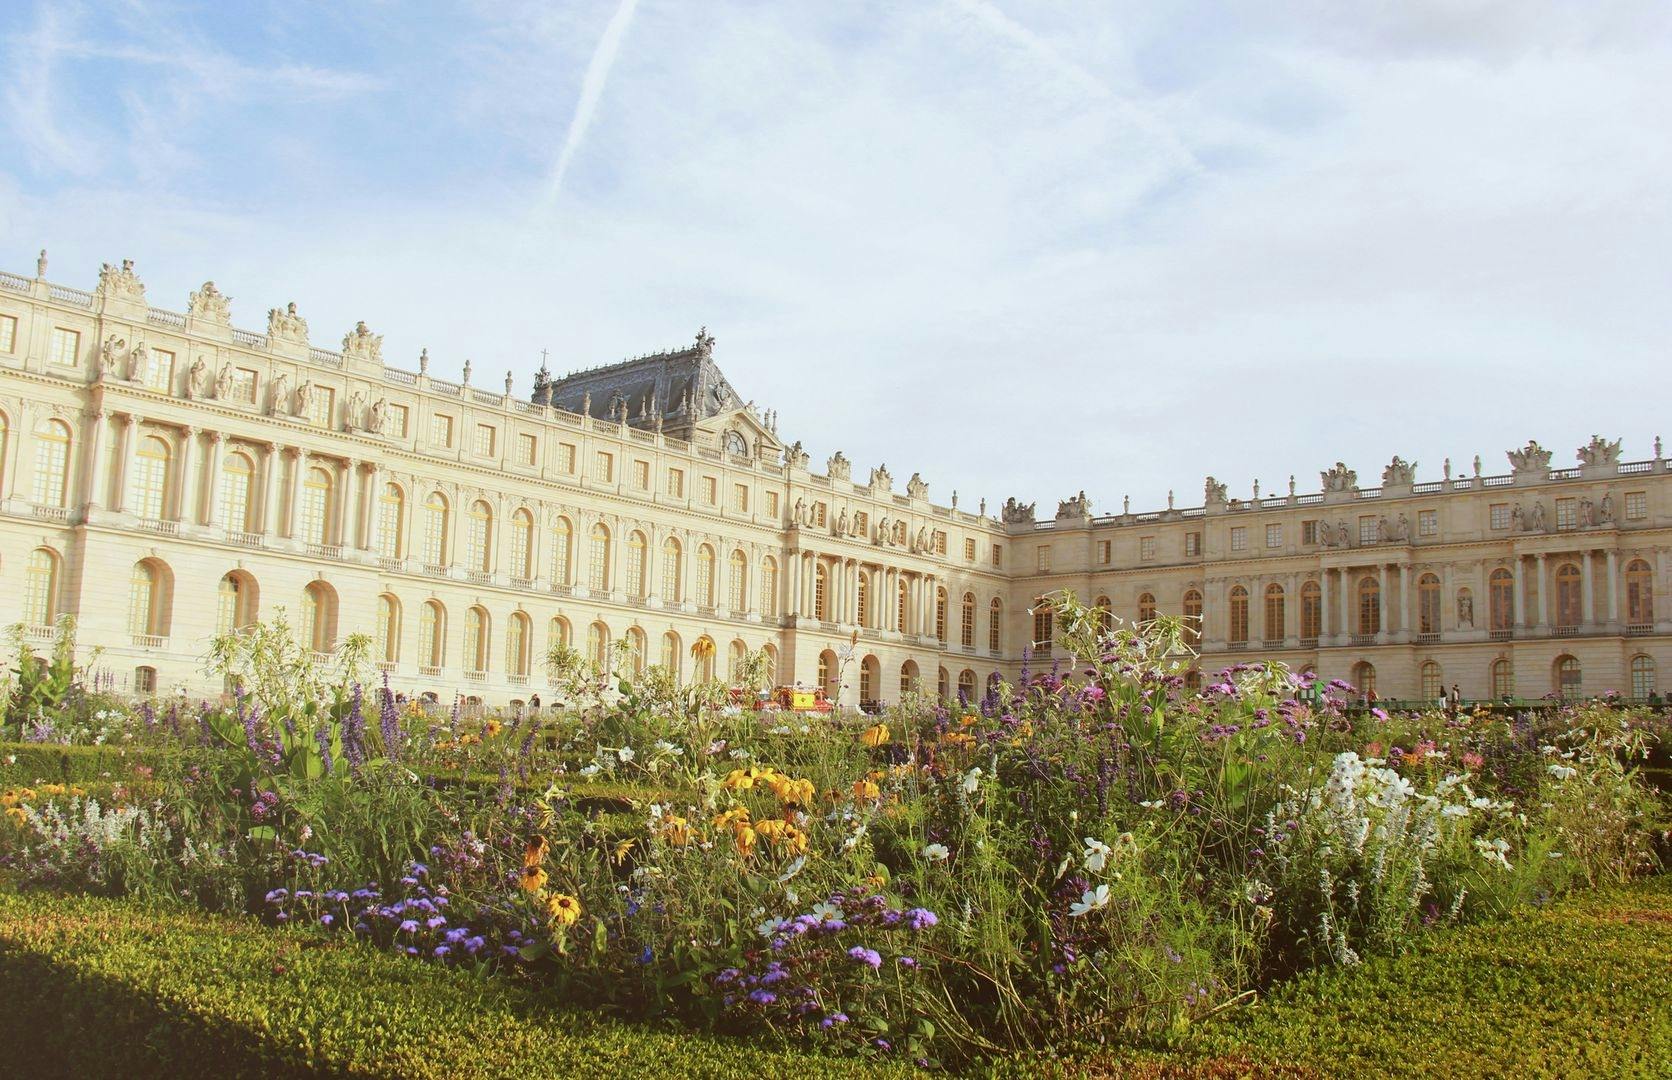 Versailles'n palatsin ja puutarhojen liput ja äänikierros mobiilisovelluksessa